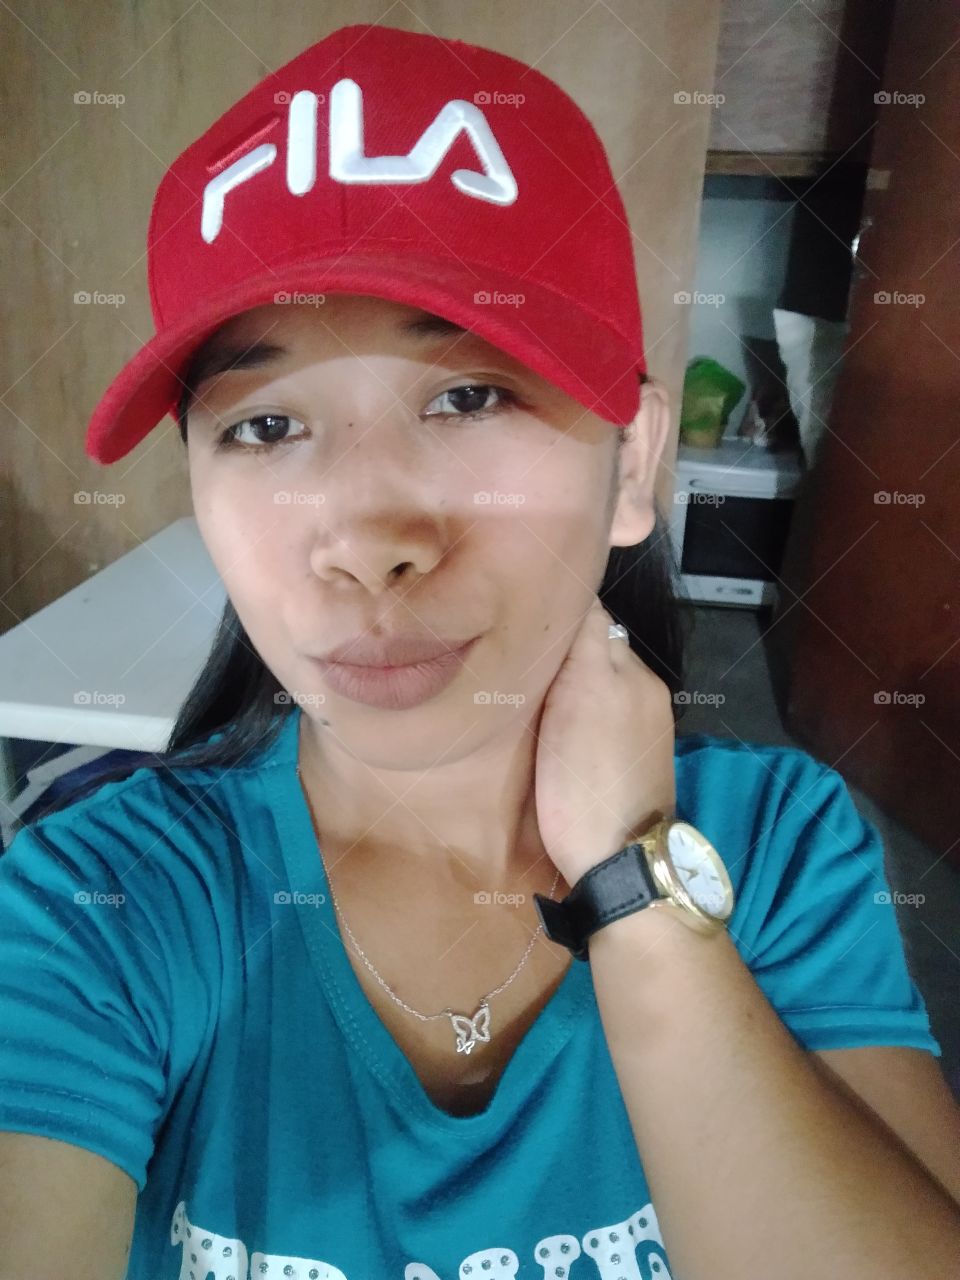 cool red cap